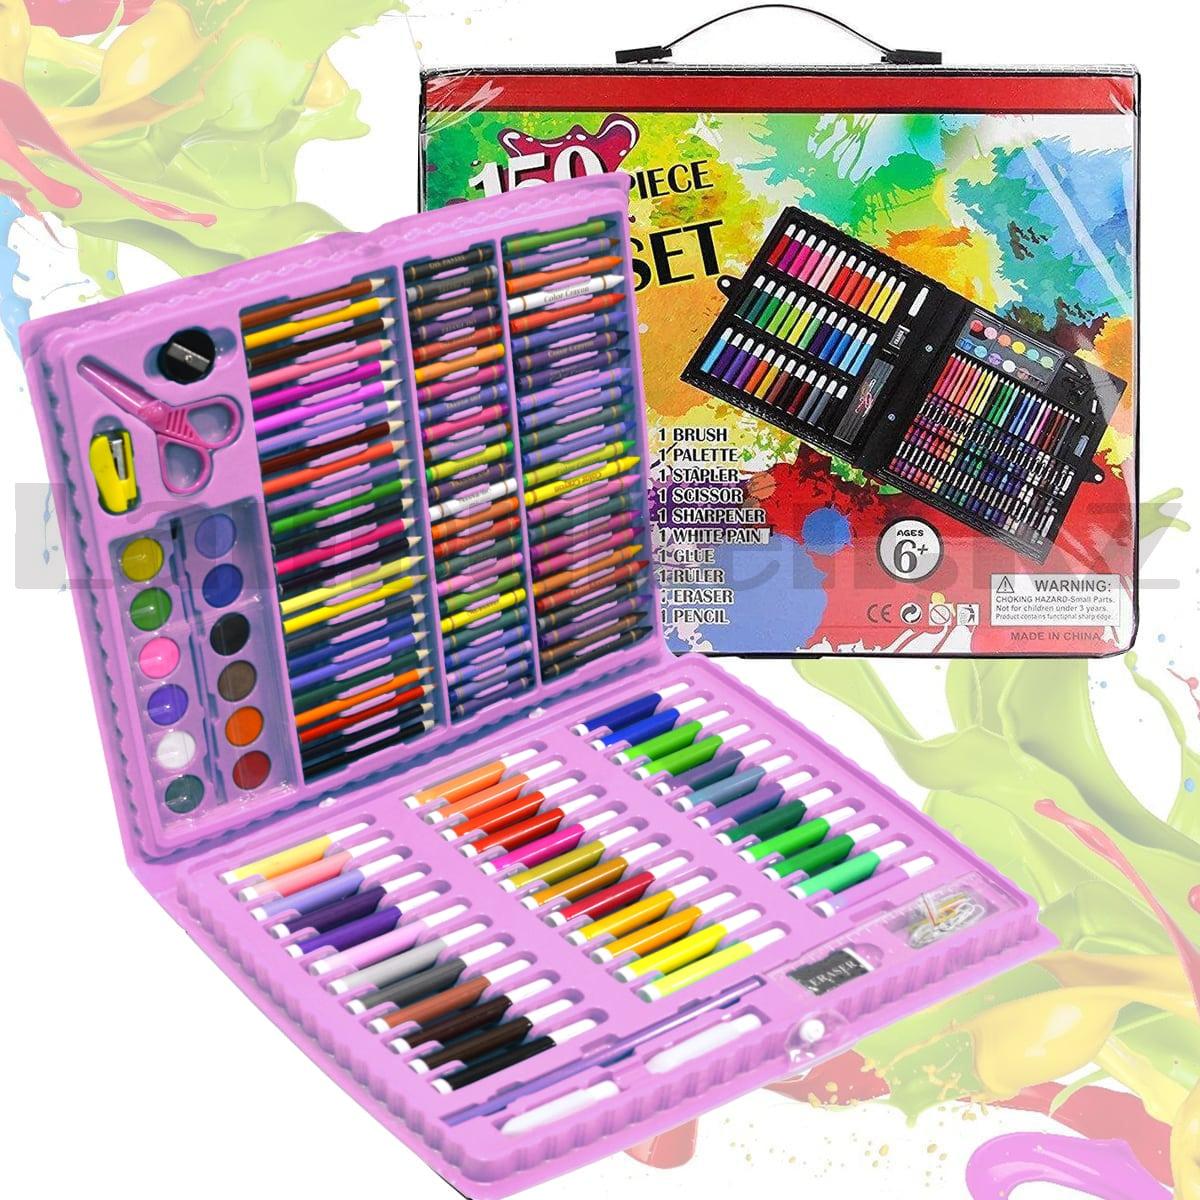 Набор для рисования Art Set 150 piece фломастеры мелки карандаши краски розовый, фото 1